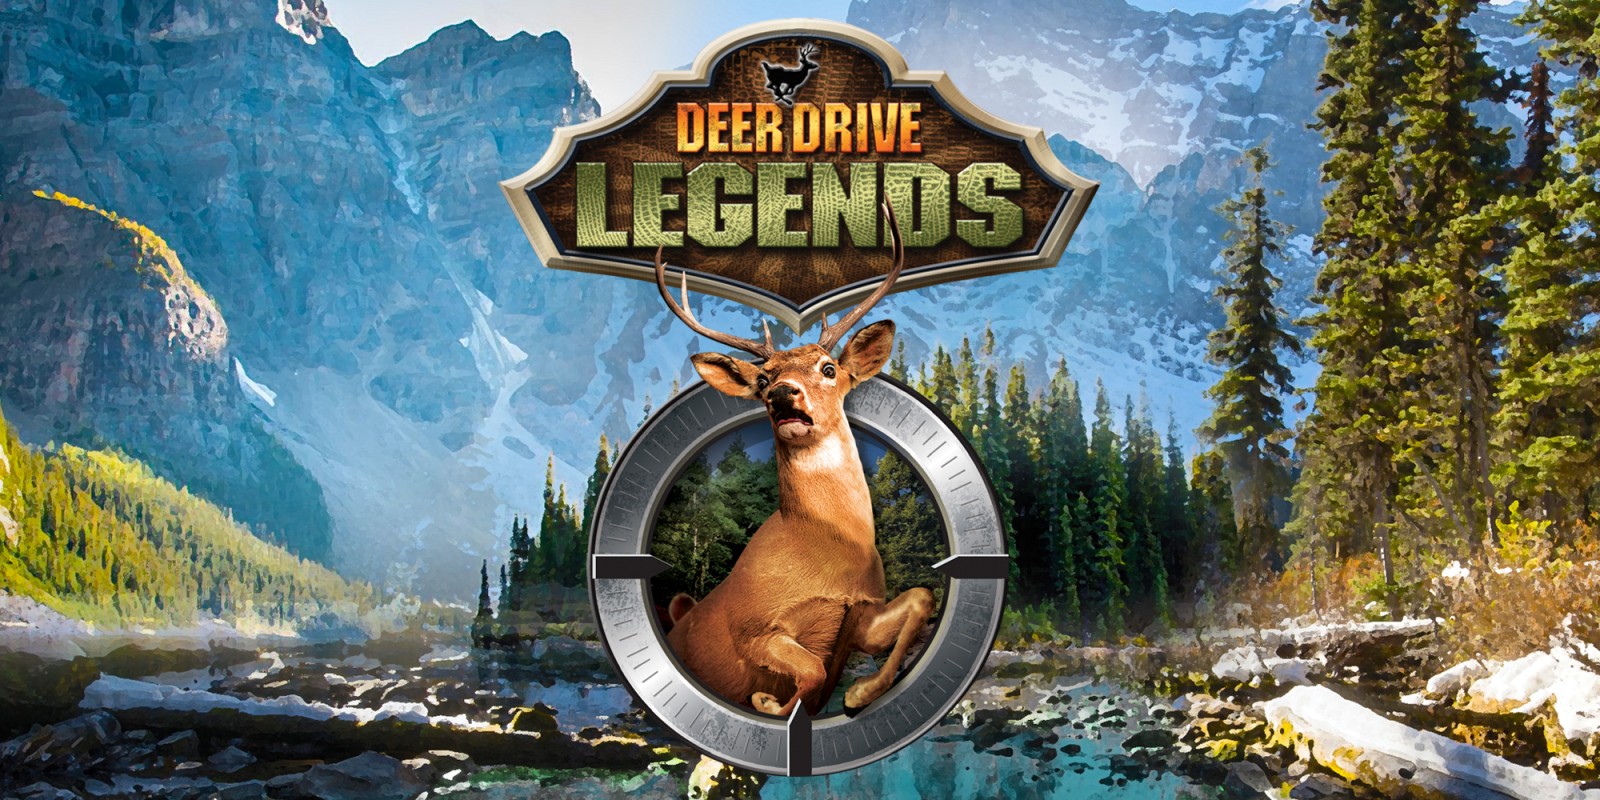 deer drive game online